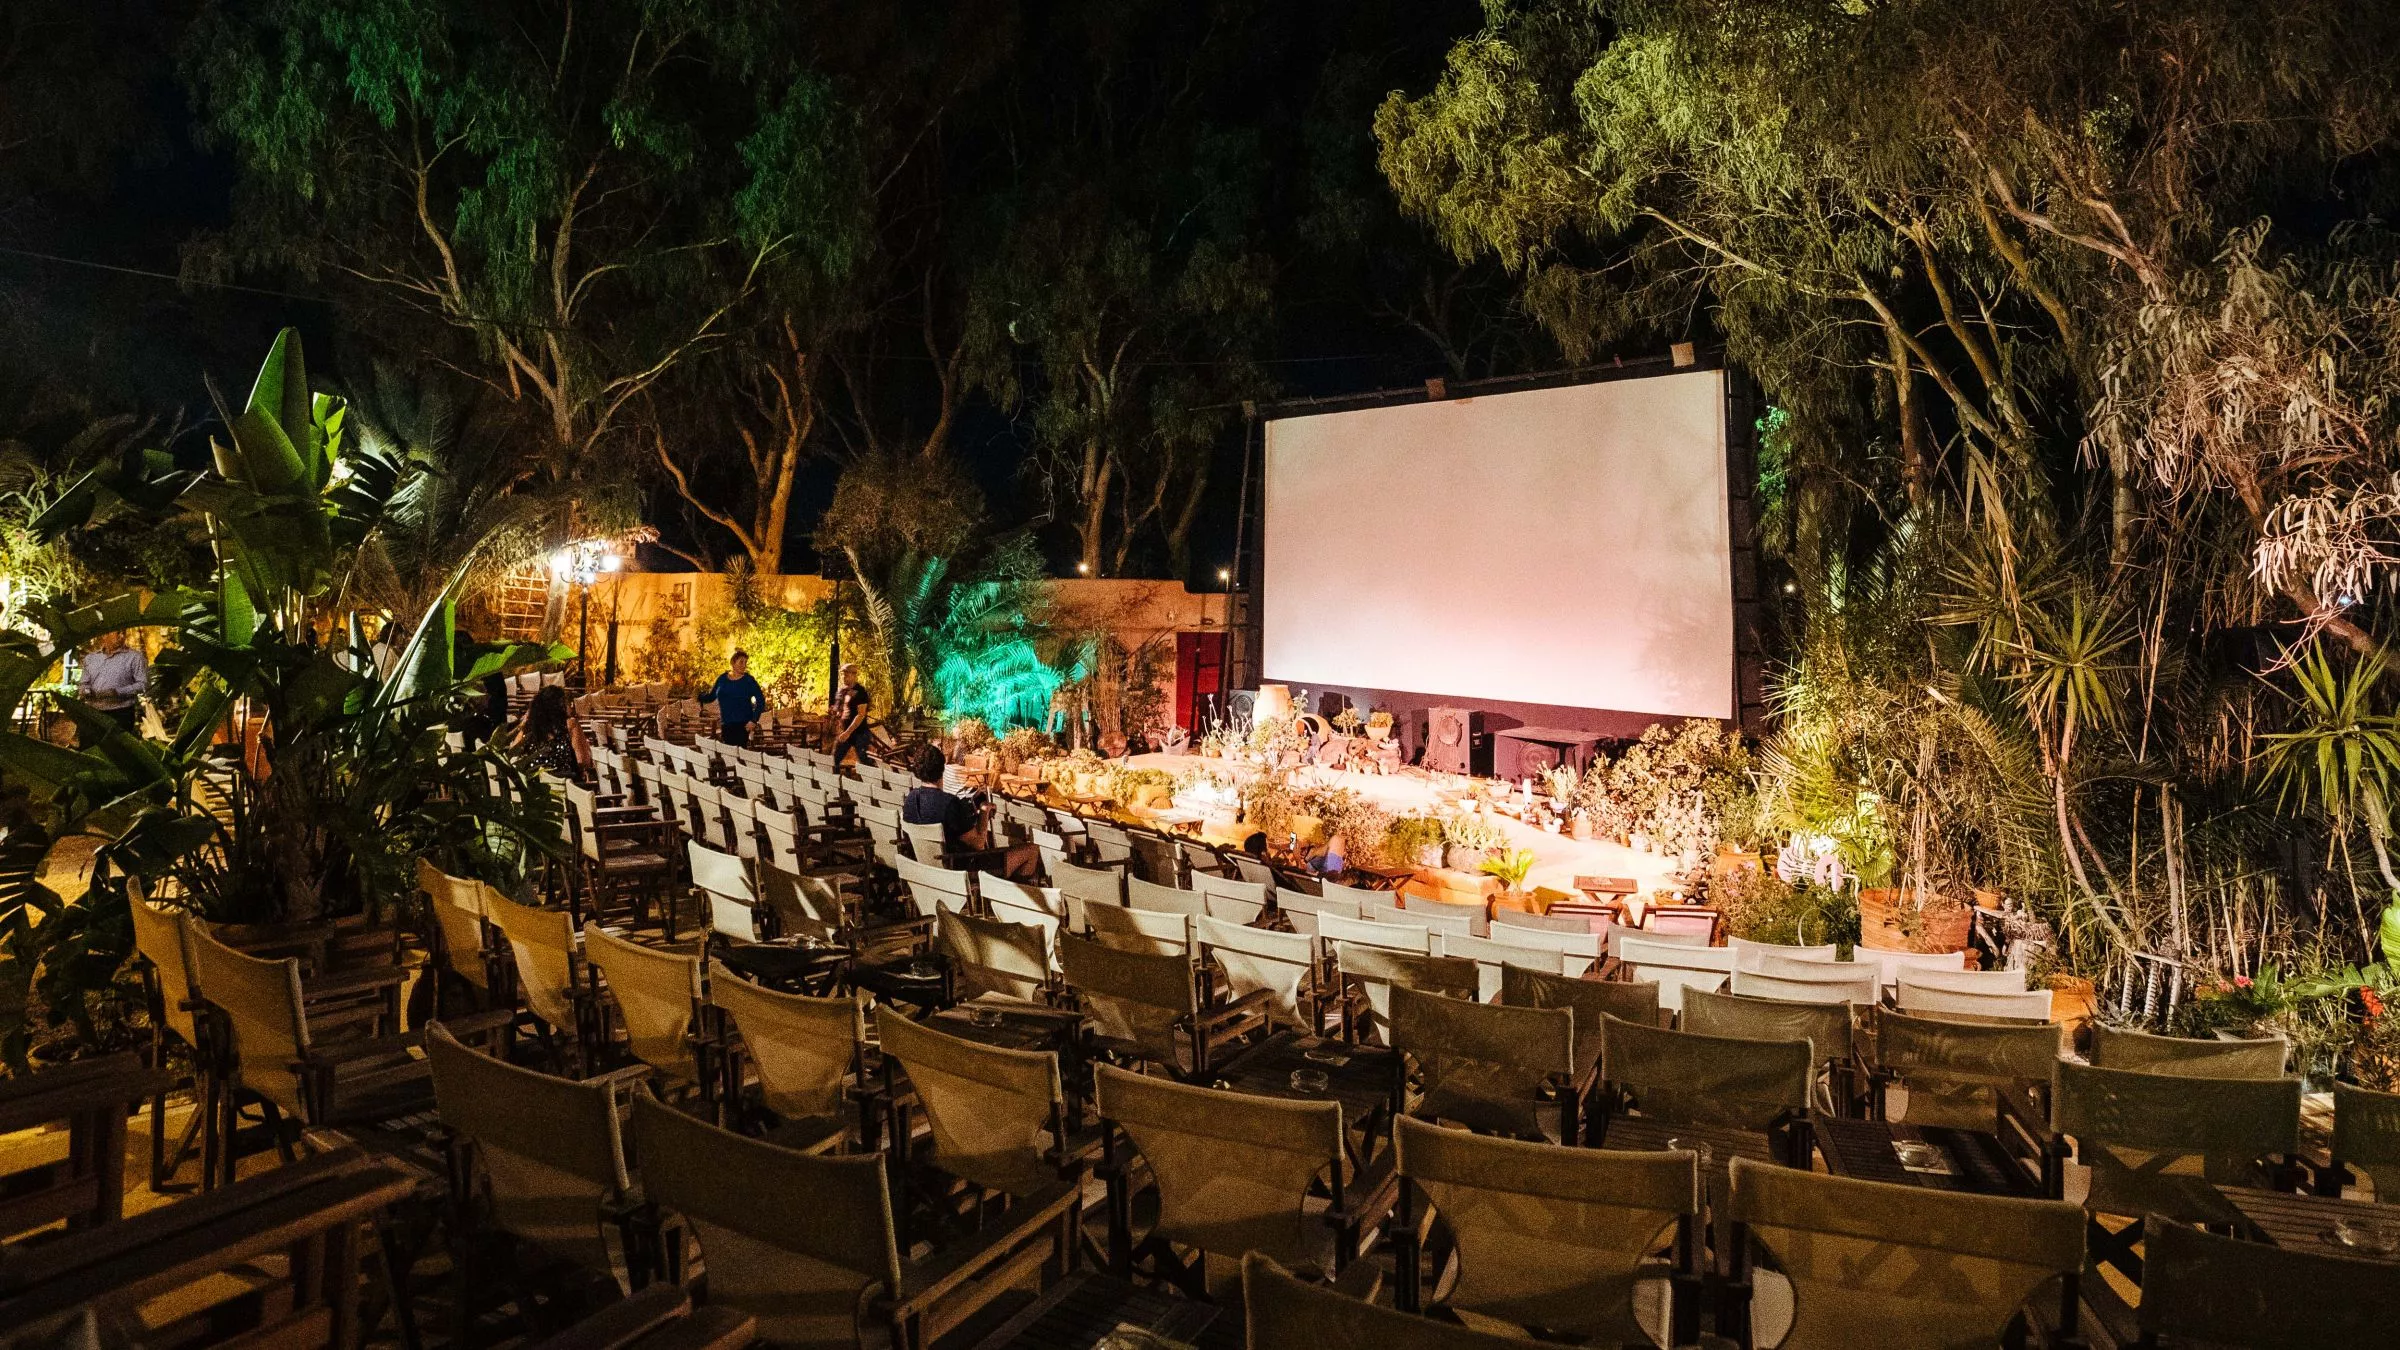 Hat von Mai bis Oktober geöffnet und wurde 2015 als eines der zehn besten Open Air Kinos weltweit ausgezeichnet – das Open Air Cinema Kamari